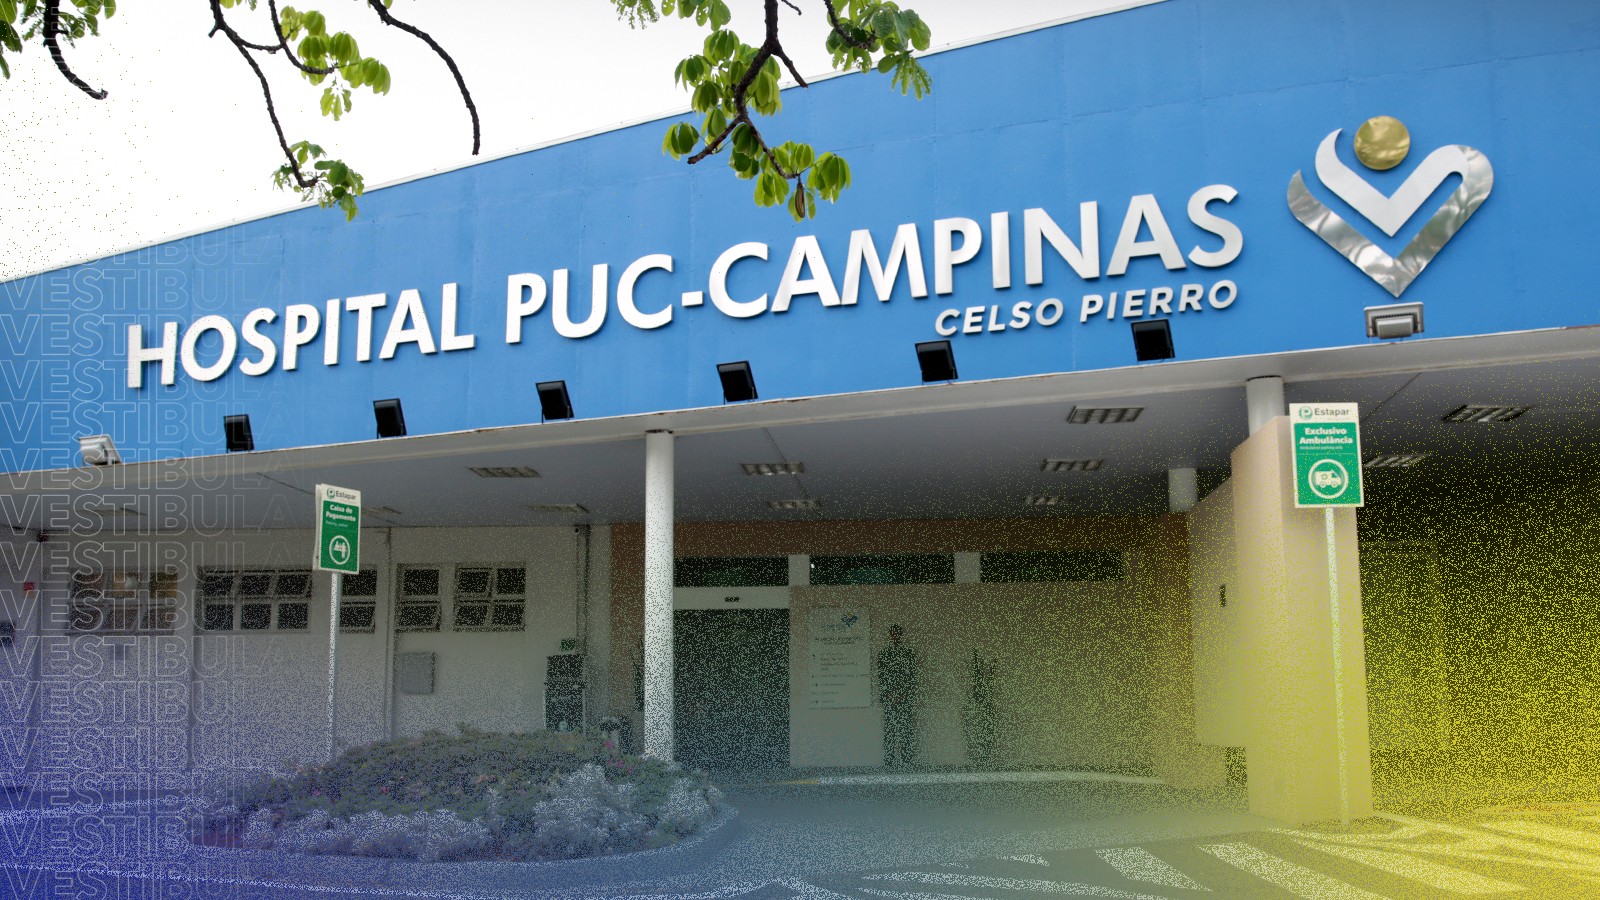 Superlotado: Hospital PUC-Campinas tem 50 pacientes internados no SUS além da capacidade